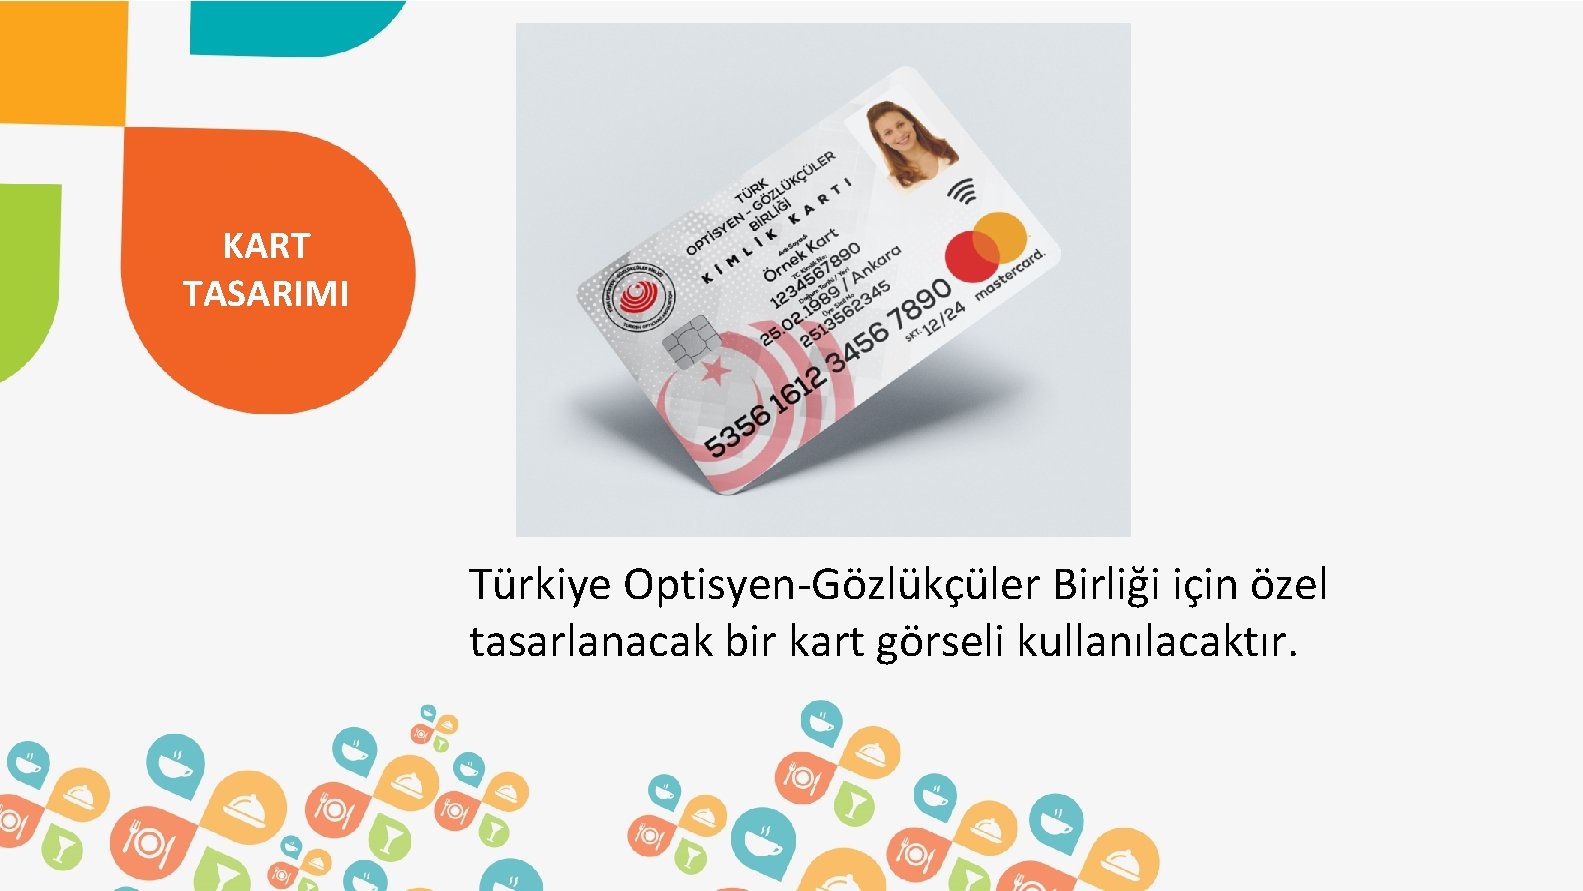 KART TASARIMI Türkiye Optisyen-Gözlükçüler Birliği için özel tasarlanacak bir kart görseli kullanılacaktır. 